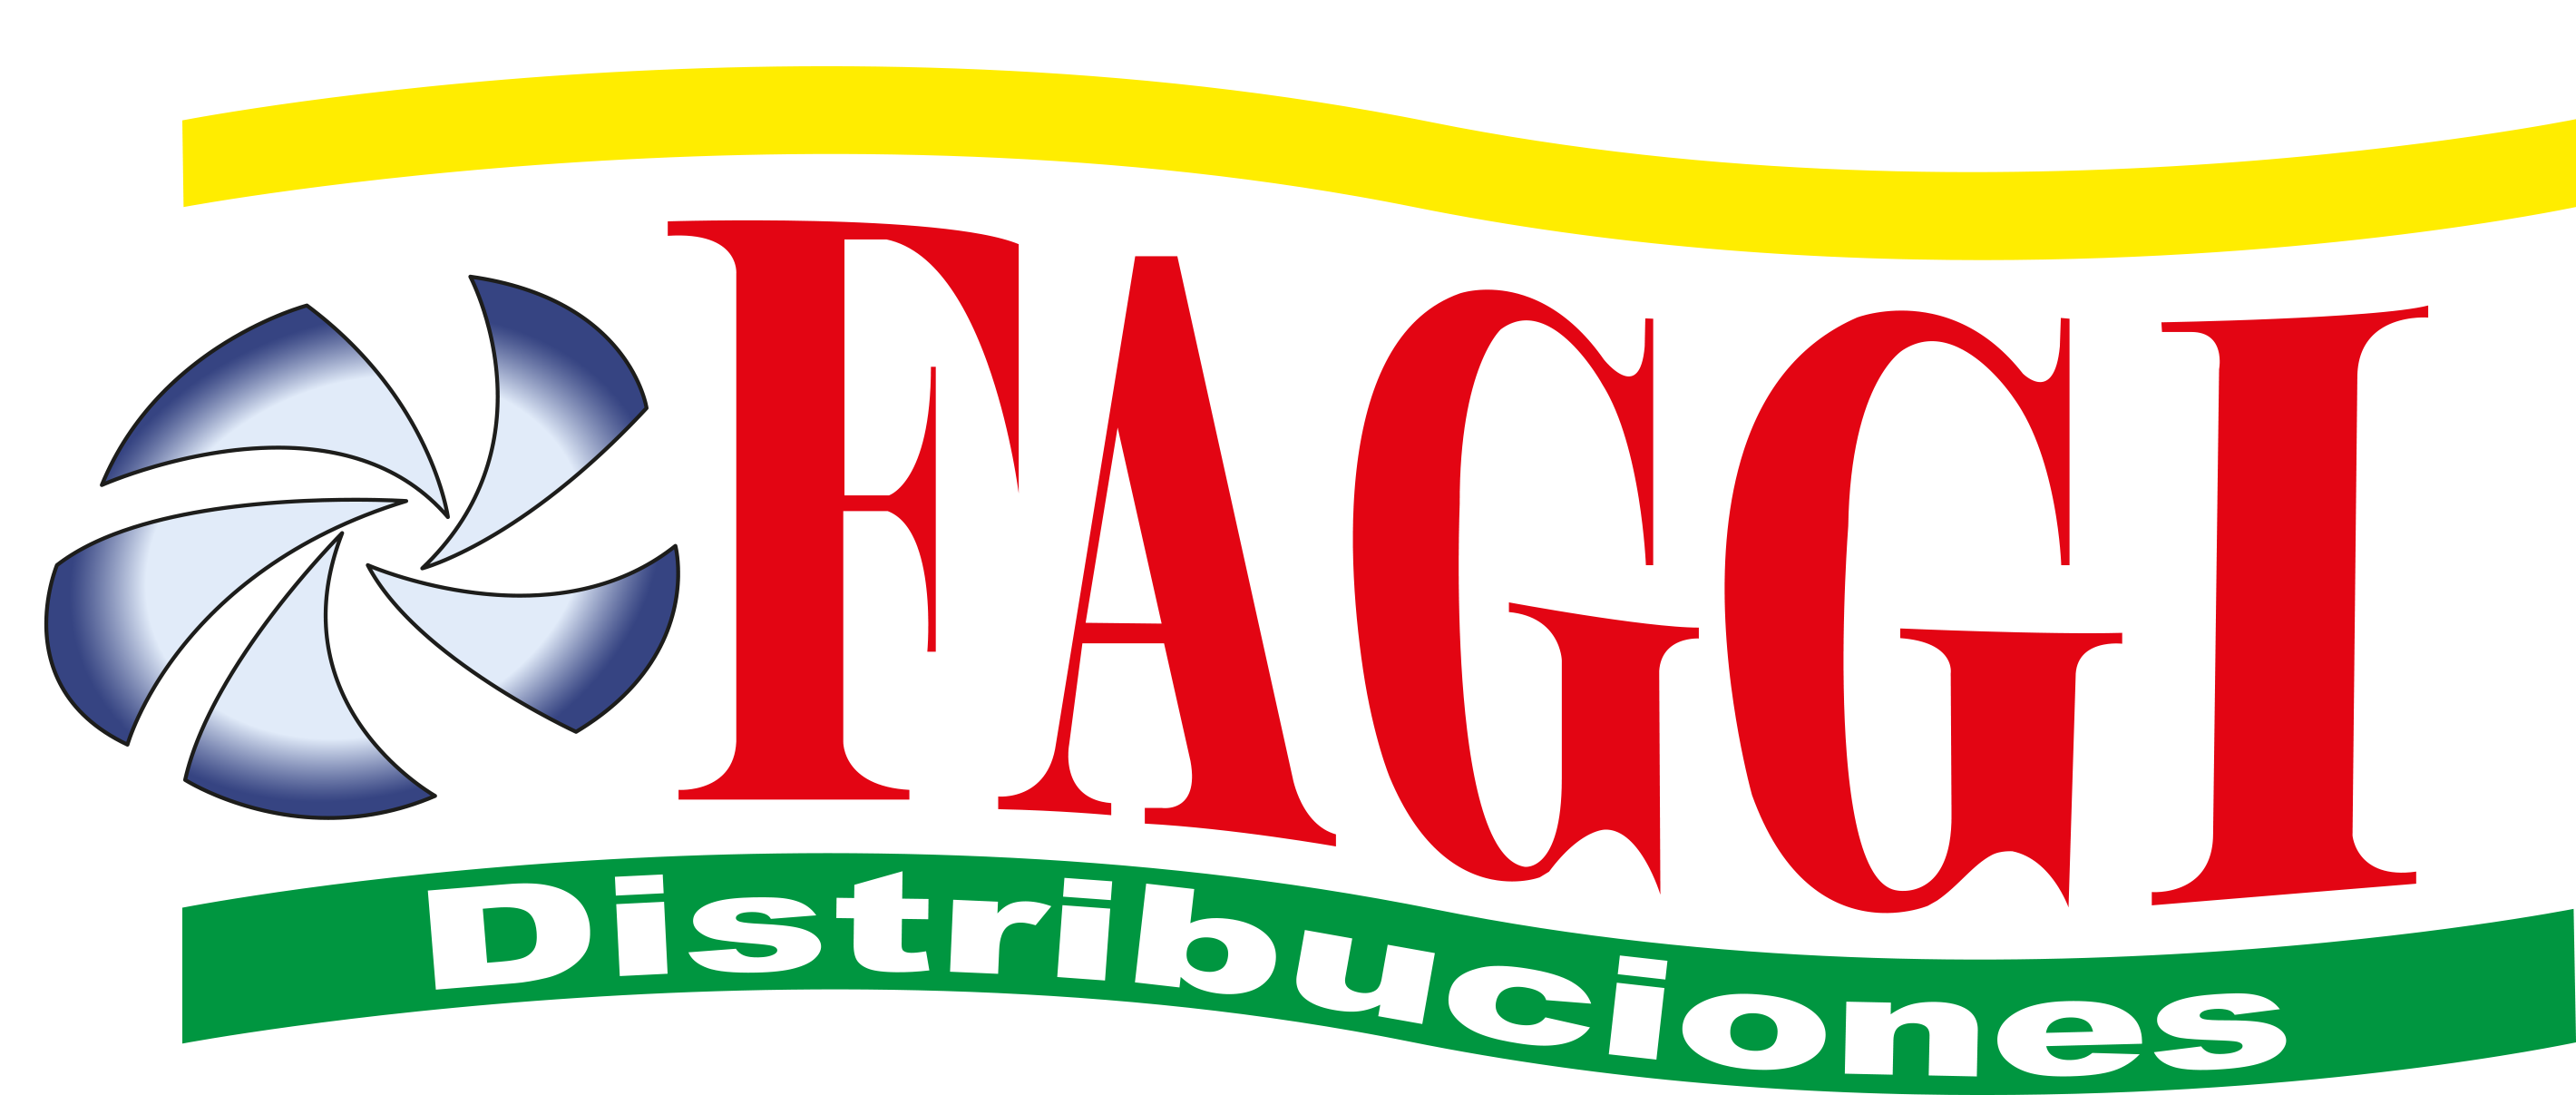 Logo Faggy